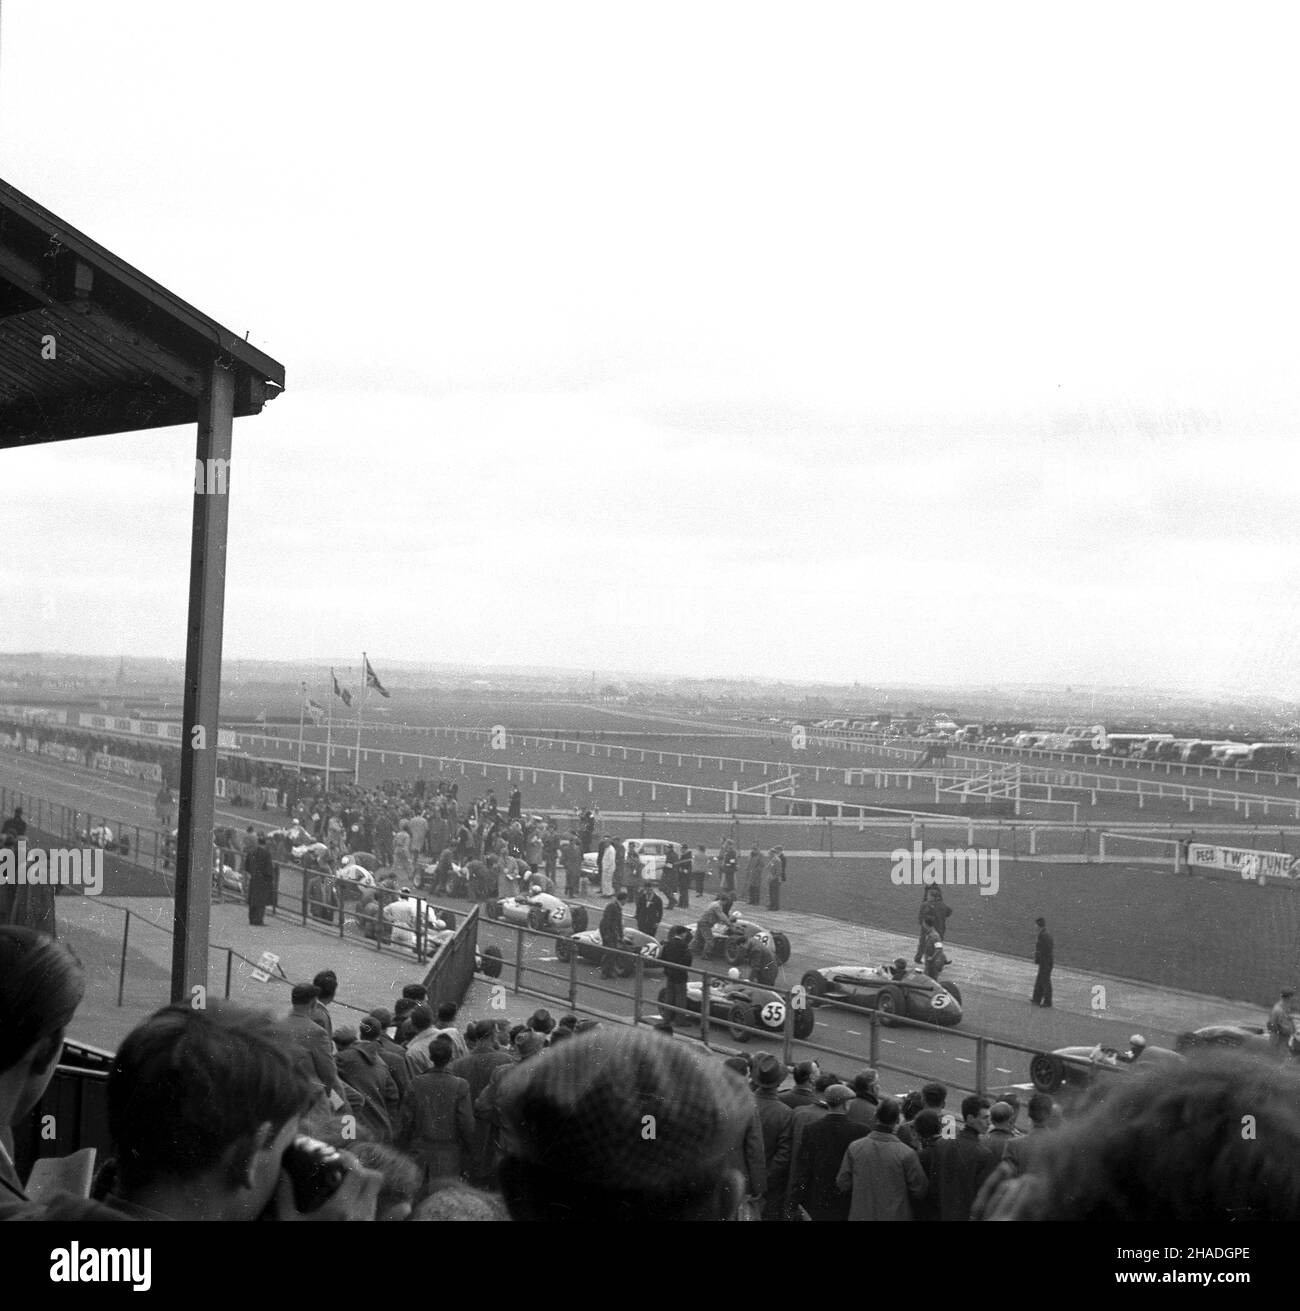 1950s, vista storica, lontana dalla tribuna di un evento motoristico, Inghilterra, Regno Unito, forse il Gran Premio di Gran Bretagna al famoso ippodromo di Aintree, Liverpool. Sperando di aumentare la vitalità dell'ippodromo, la nuova proprietaria di Aintree, la signora Topham, costruì un circuito automobilistico di tre miglia all'interno dell'ippodromo, utilizzando le strutture per spettatori già in atto. Foto Stock